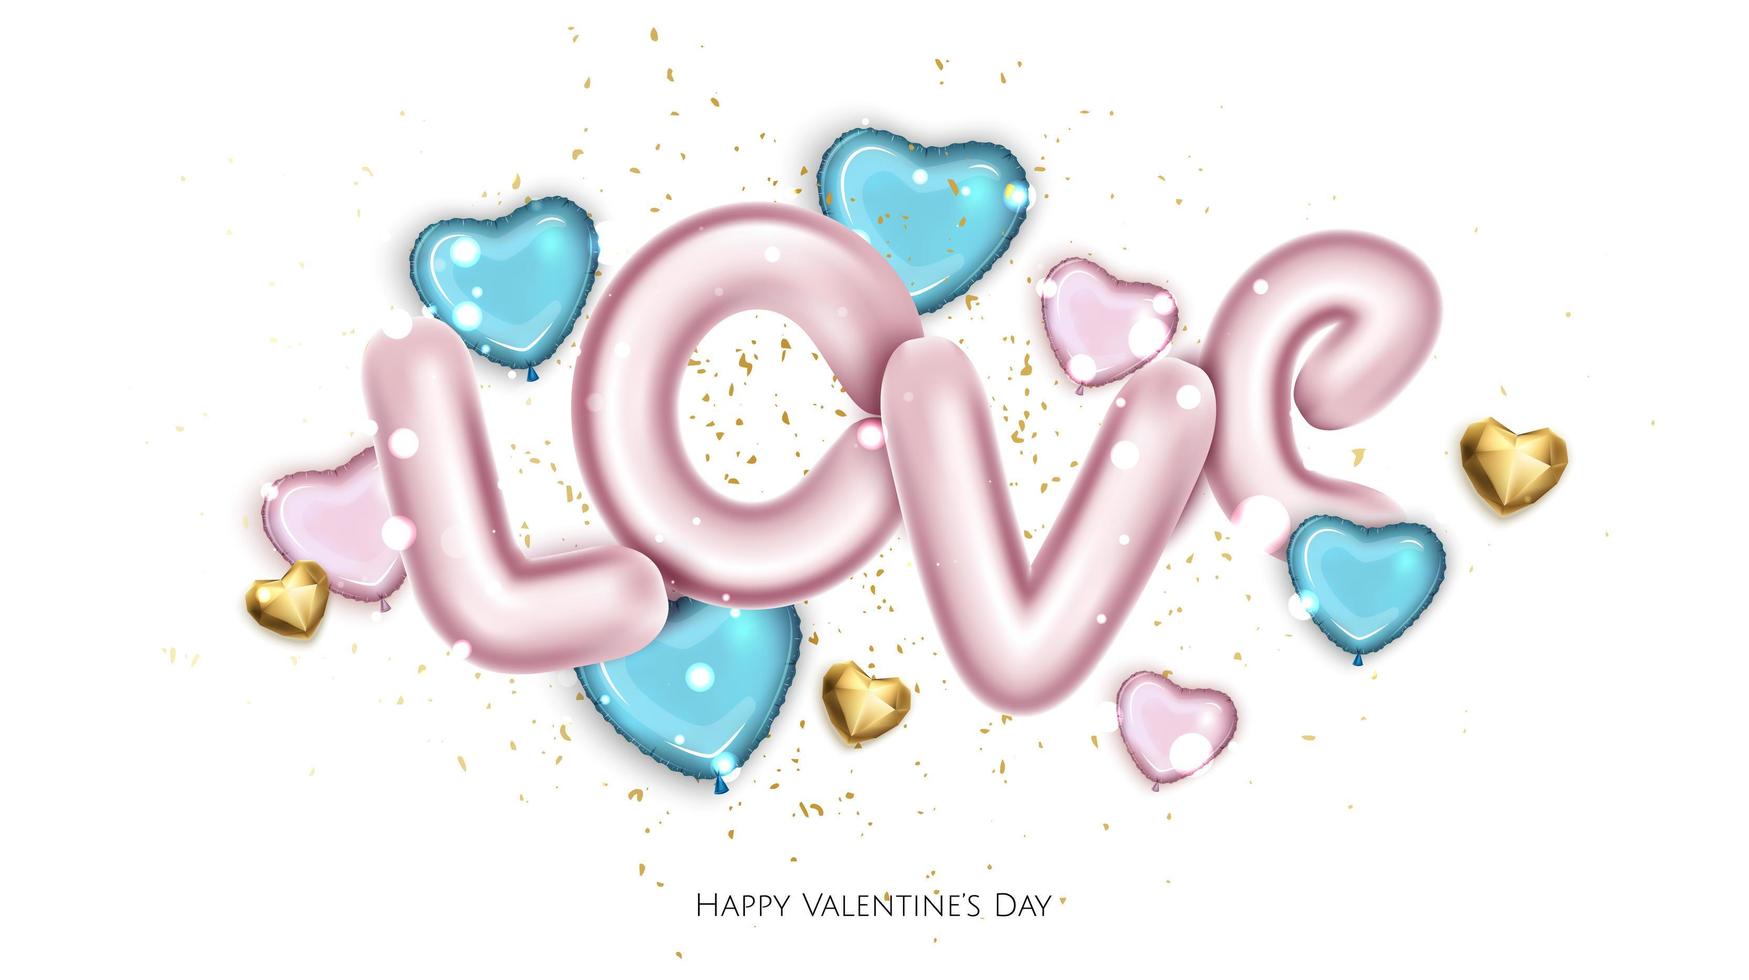 globos rosas y azules en forma de corazones, texto de metal rosa amor. fondo del día de san valentín. vector